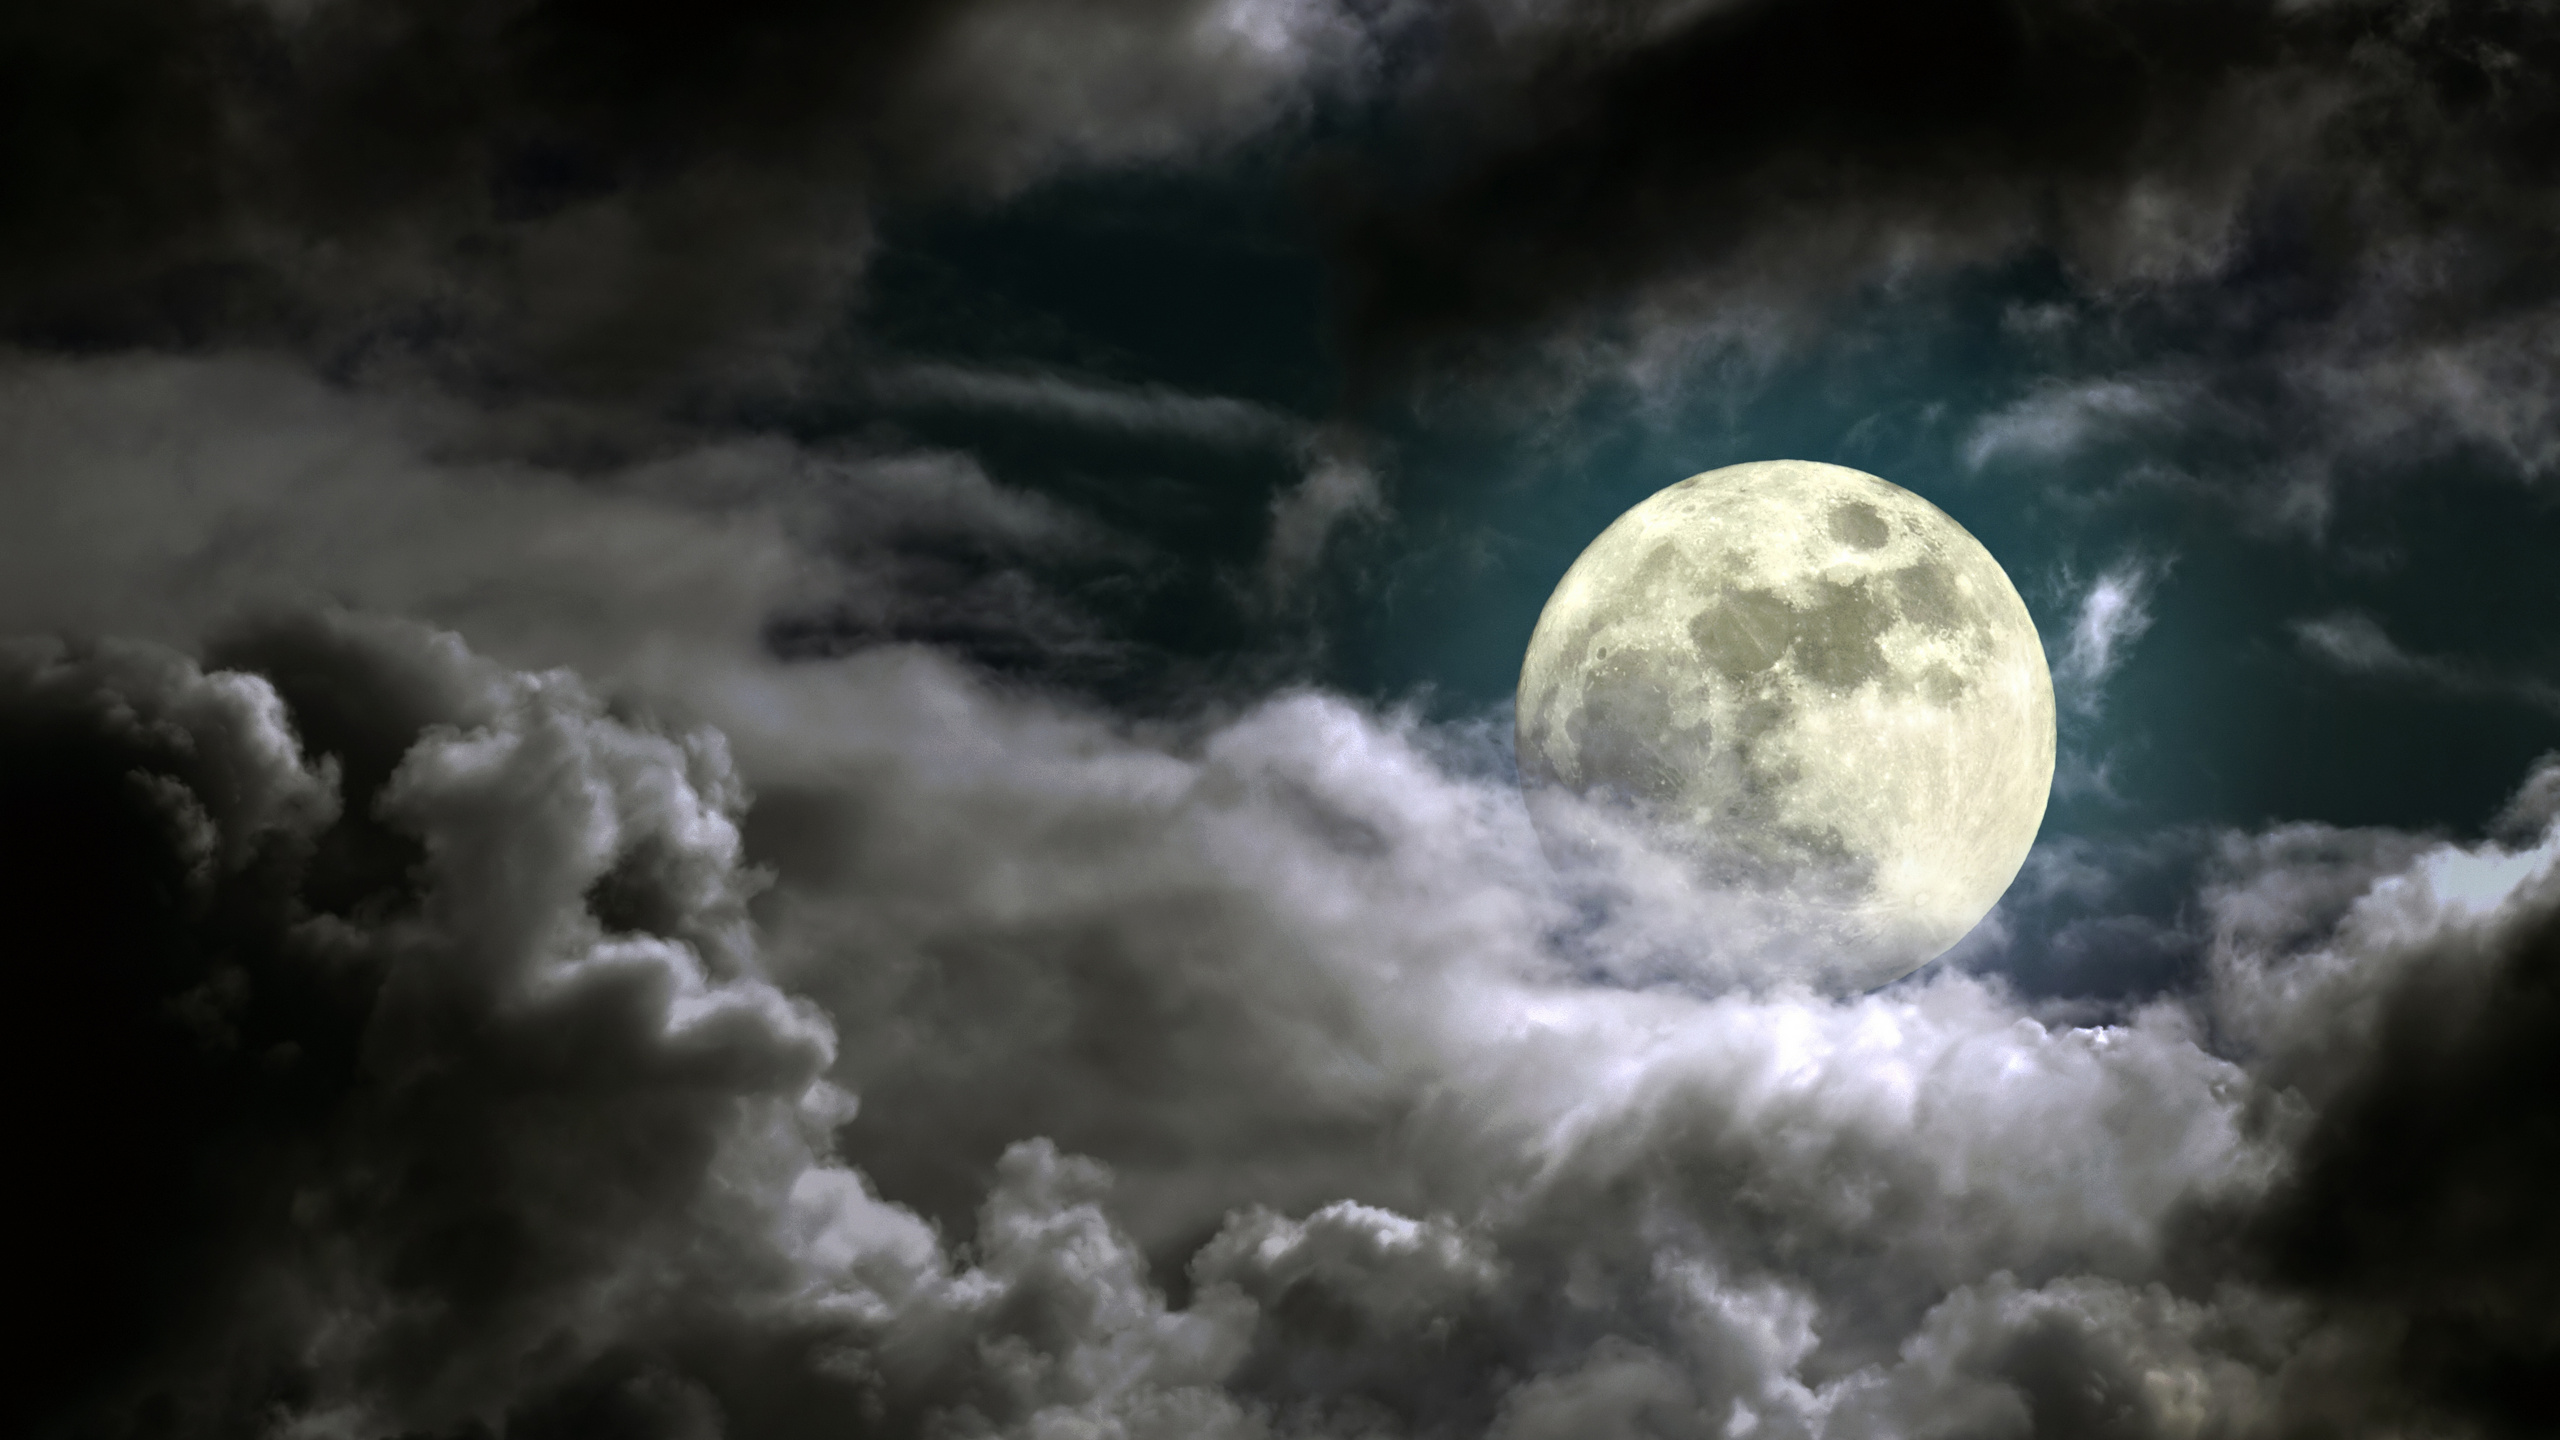 月亮, 满月, 超级月亮, 夜晚的天空, 性质 壁纸 2560x1440 允许